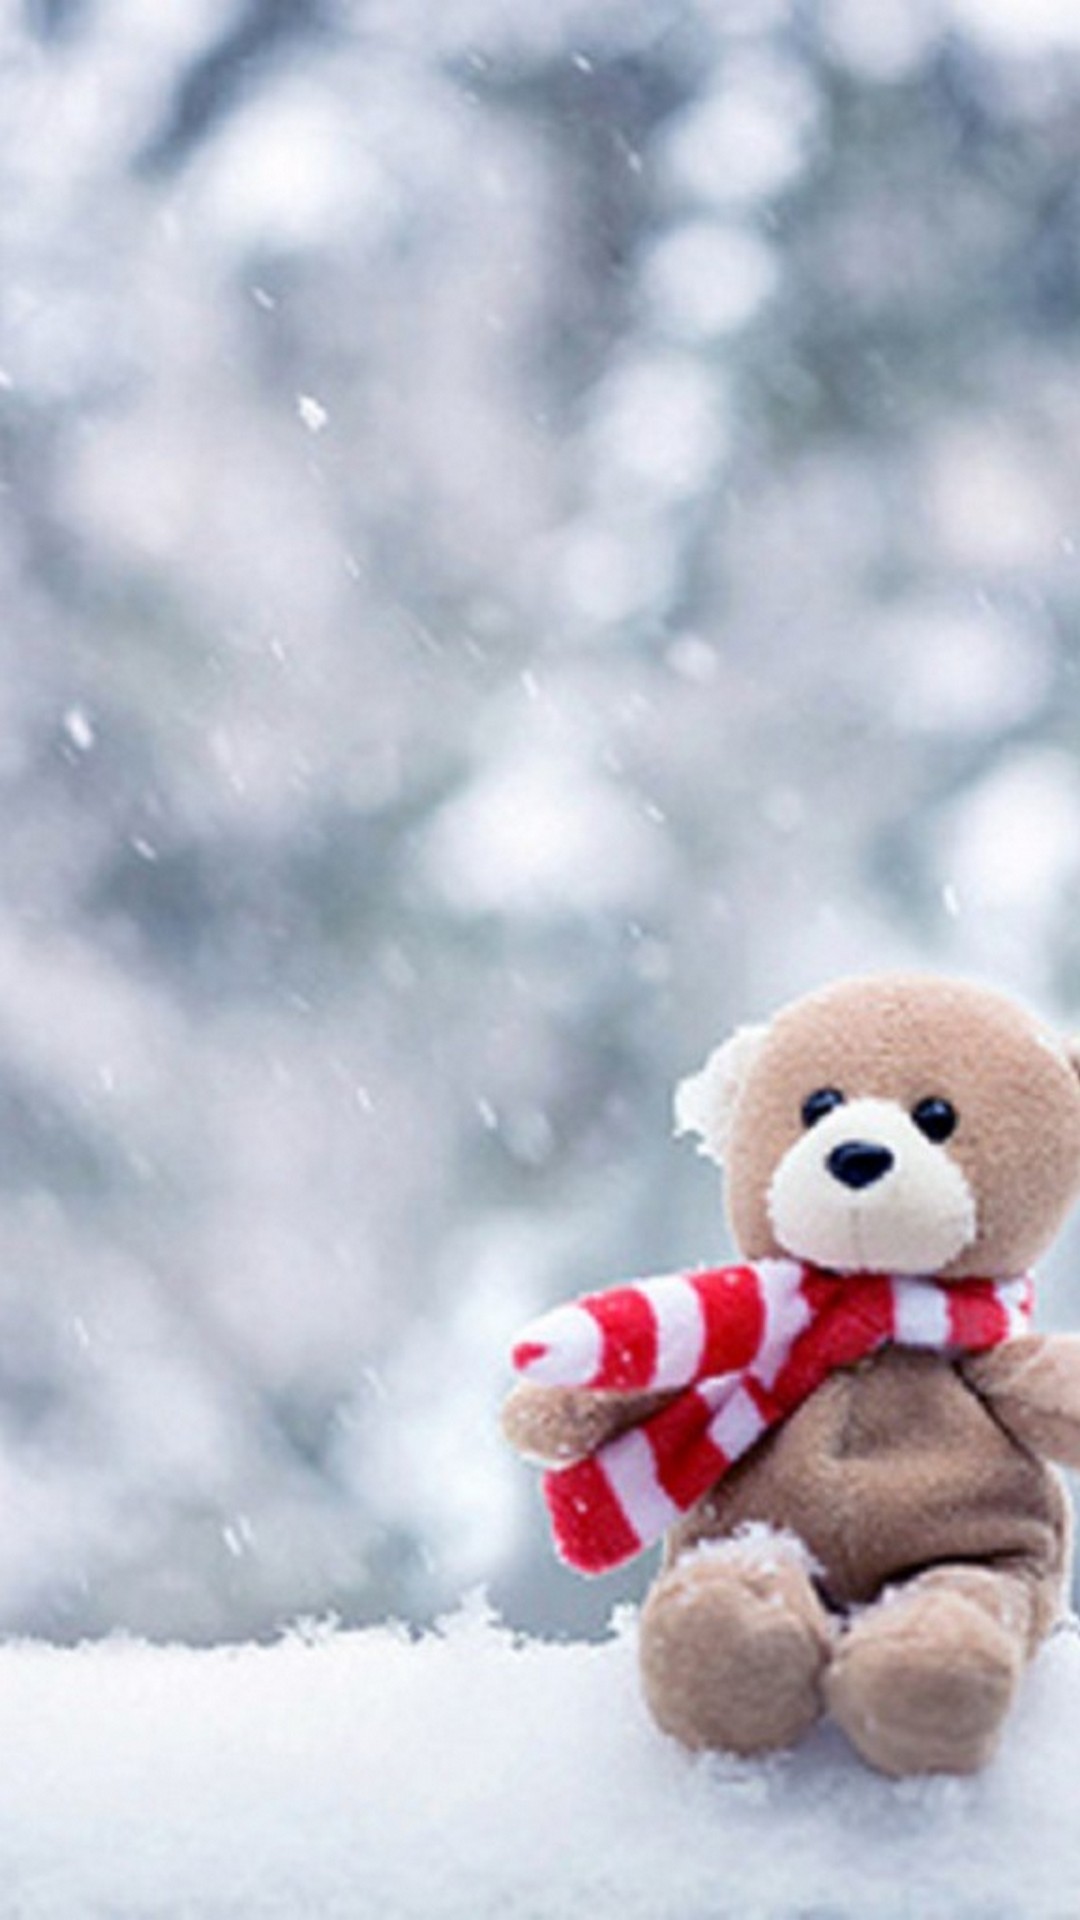 fonds d'écran teddy pour mobile,ours en peluche,jouet en peluche,jouet,neige,hiver